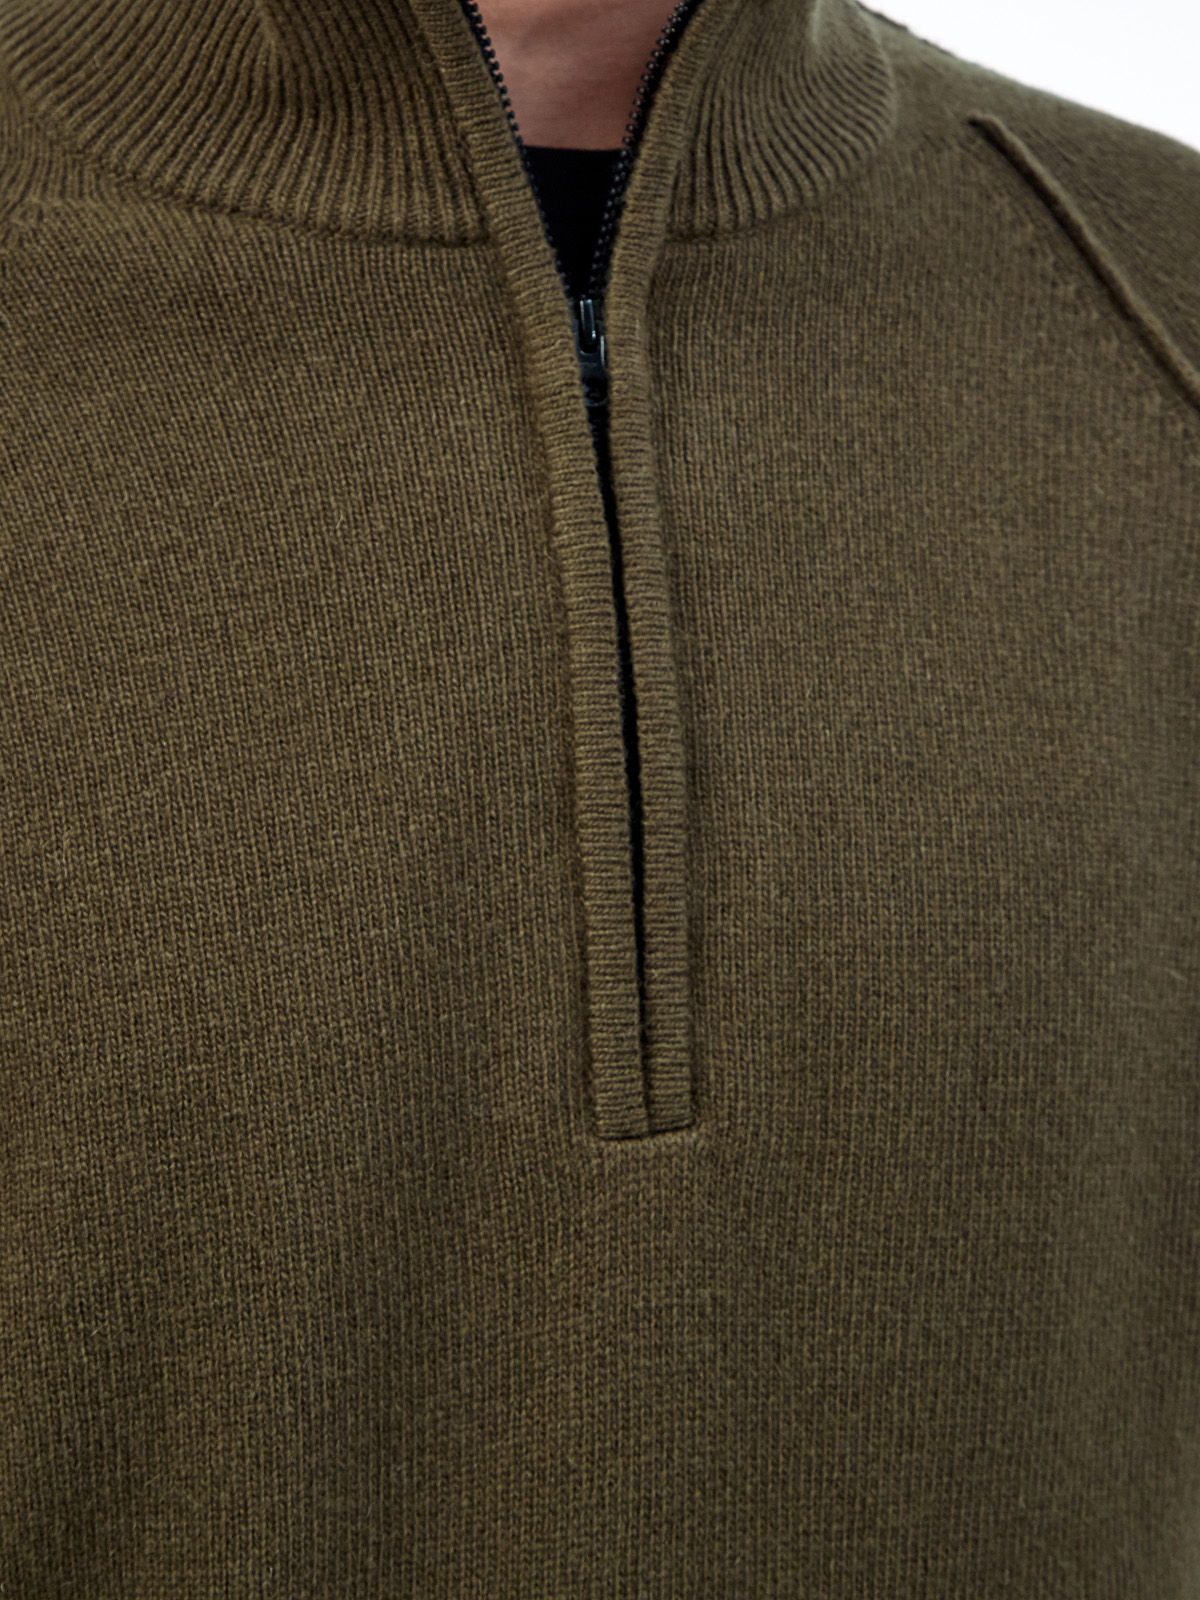 Шерстяной свитер с фактурными швами и застежкой на молнию C.P.COMPANY, цвет зеленый, размер L;XL;2XL;M - фото 5